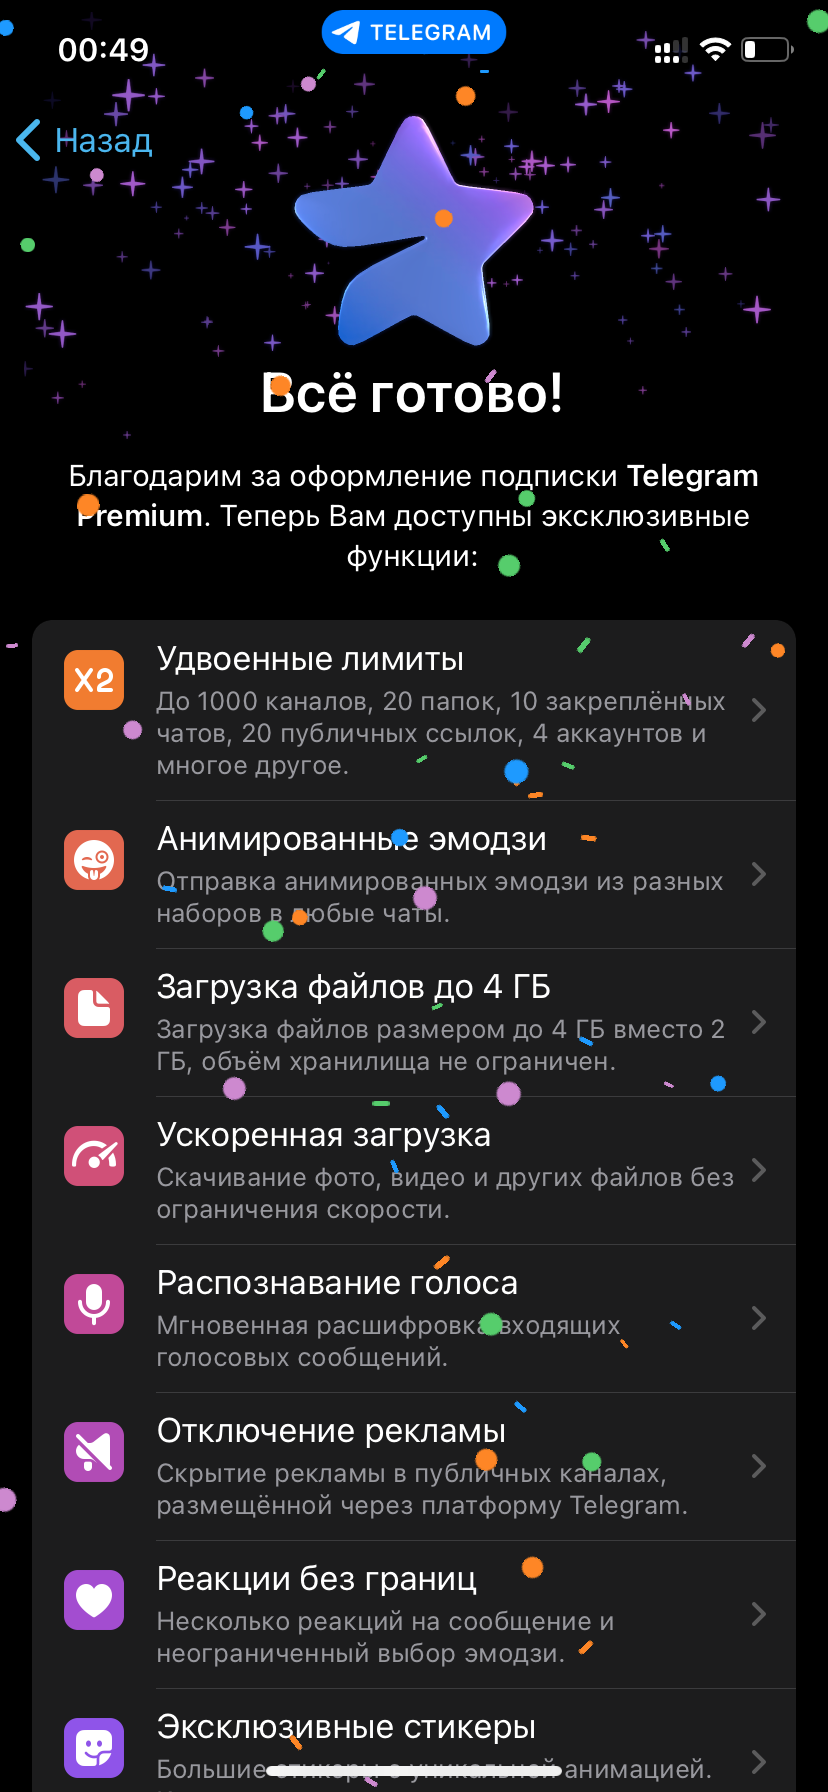 Премиум телеграмм бесплатно андроид скачать на русском последняя версия фото 108